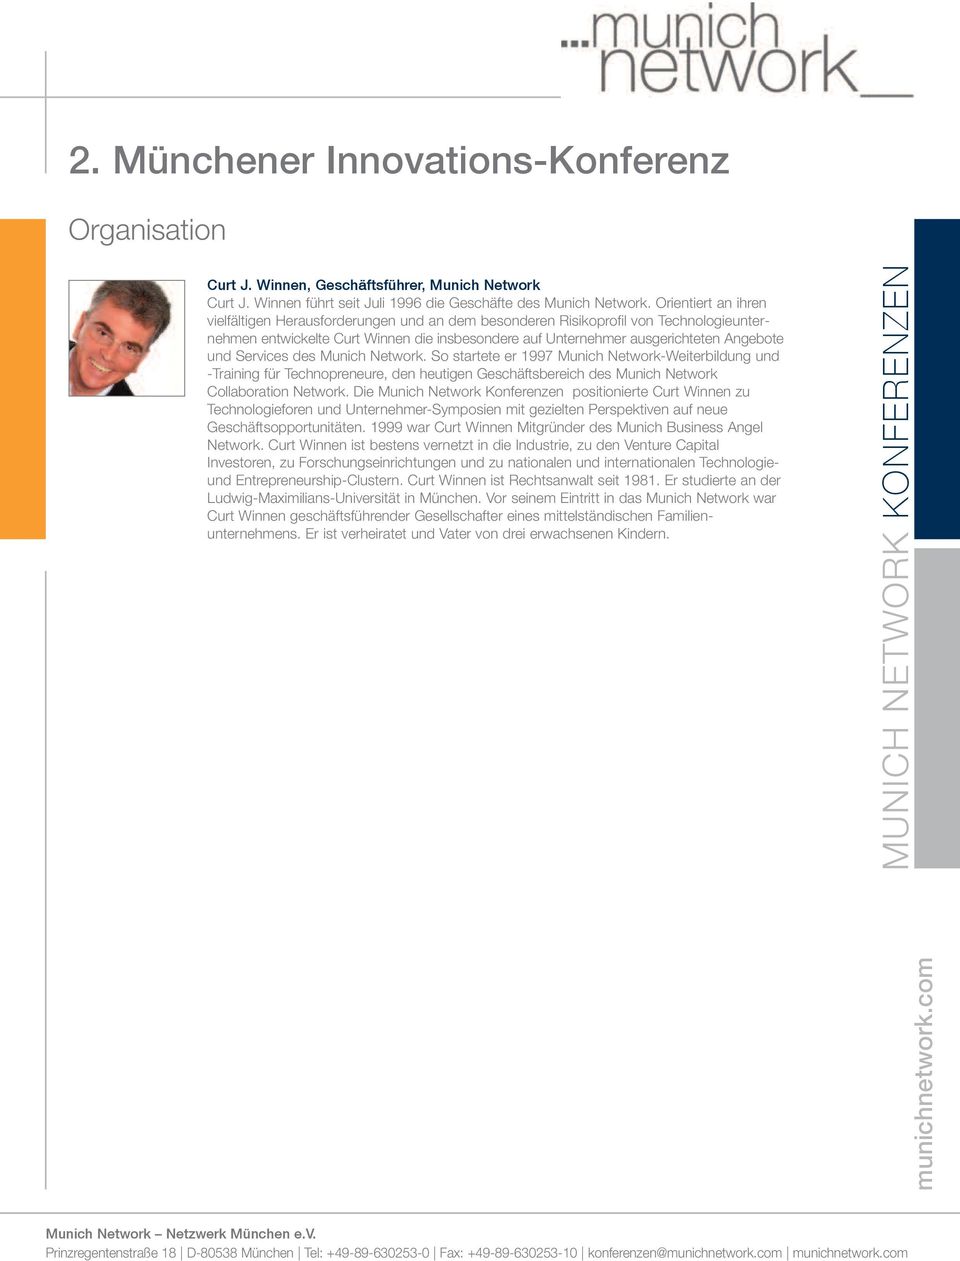 und Services des Munich Network. So startete er 1997 Munich Network-Weiterbildung und -Training für Technopreneure, den heutigen Geschäftsbereich des Munich Network Collaboration Network.